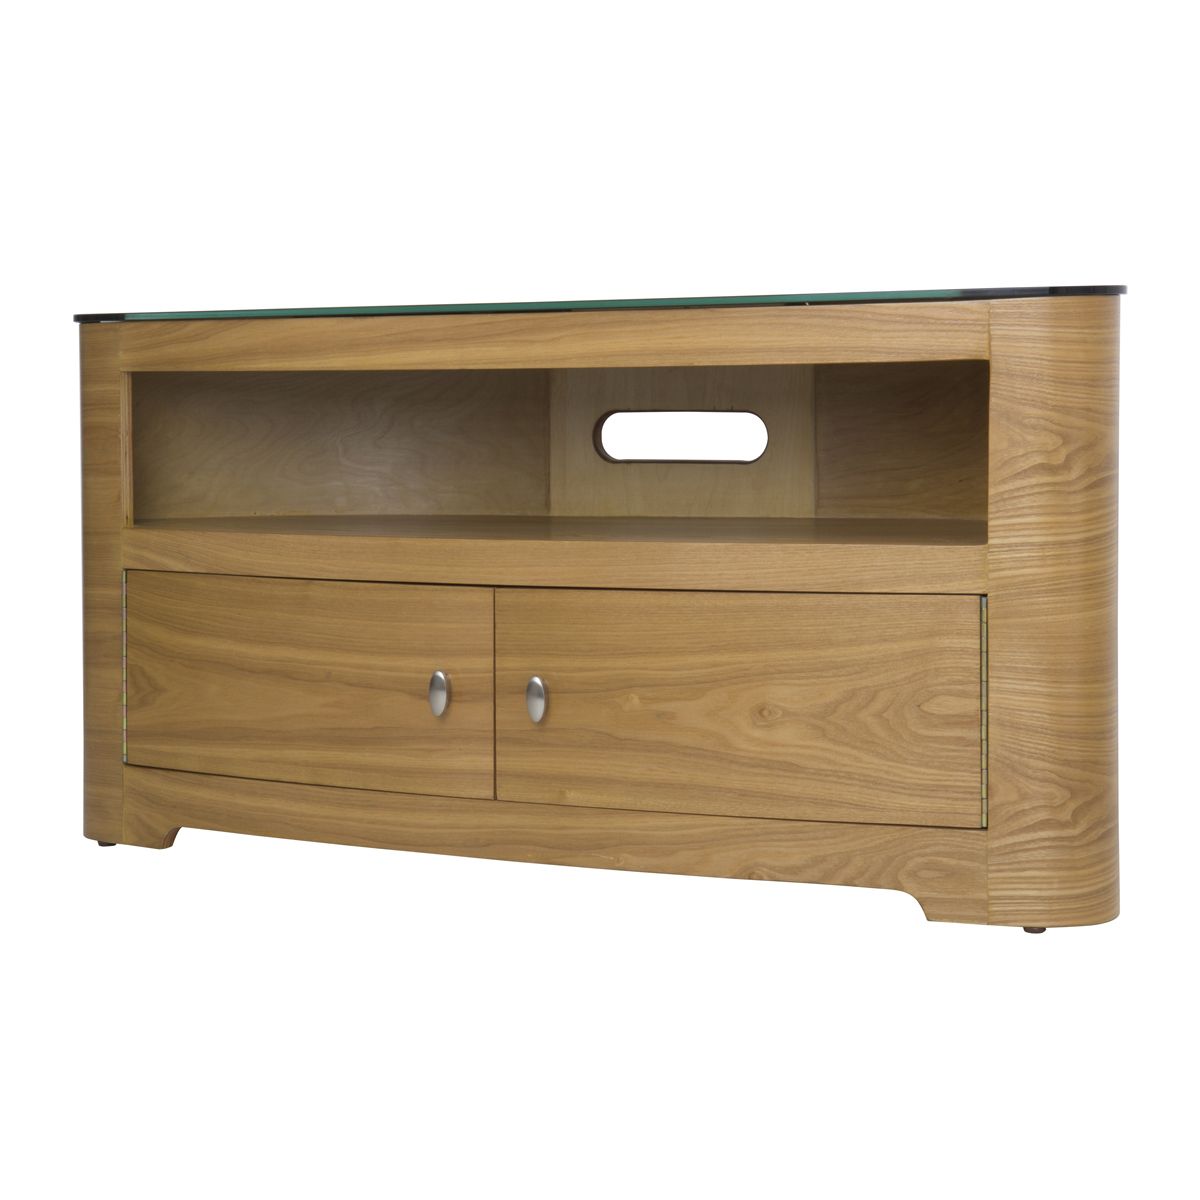 Large Oak Veneer Oval Lcd Plasma Tv Stand Cabinet 42+ Inch Throughout Oak Veneer Tv Stands (View 9 of 15)